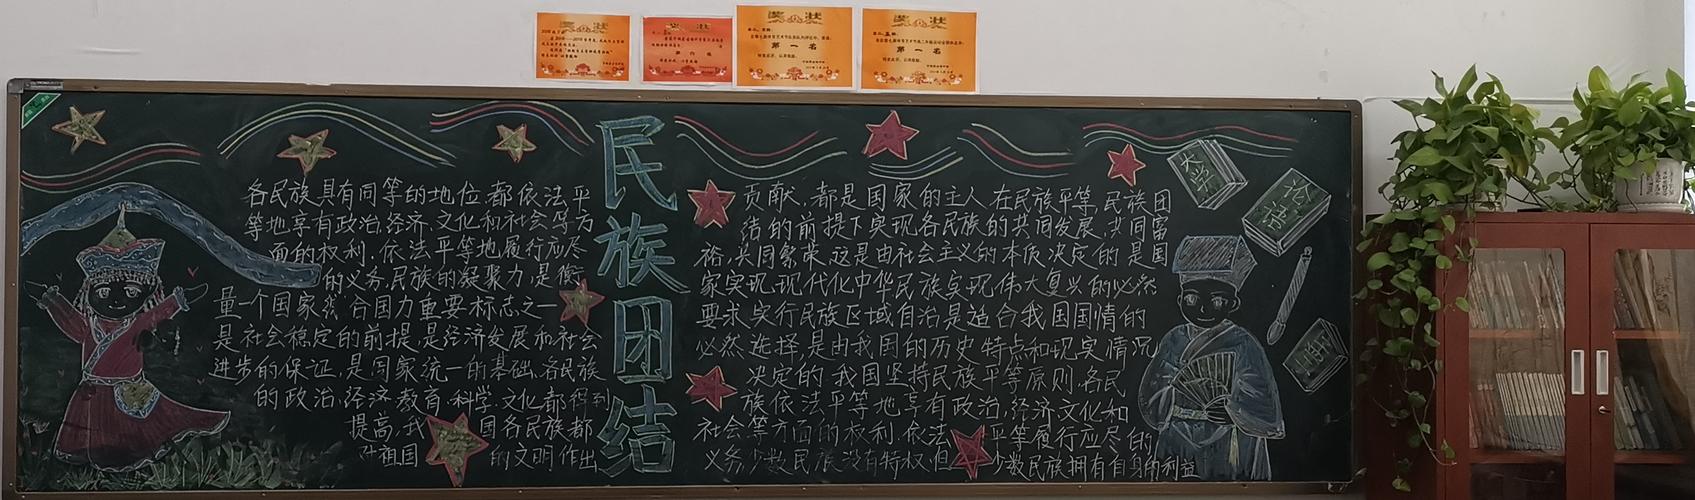 宁城蒙古族中学高二年级部民族团结一家亲黑板报评比活动